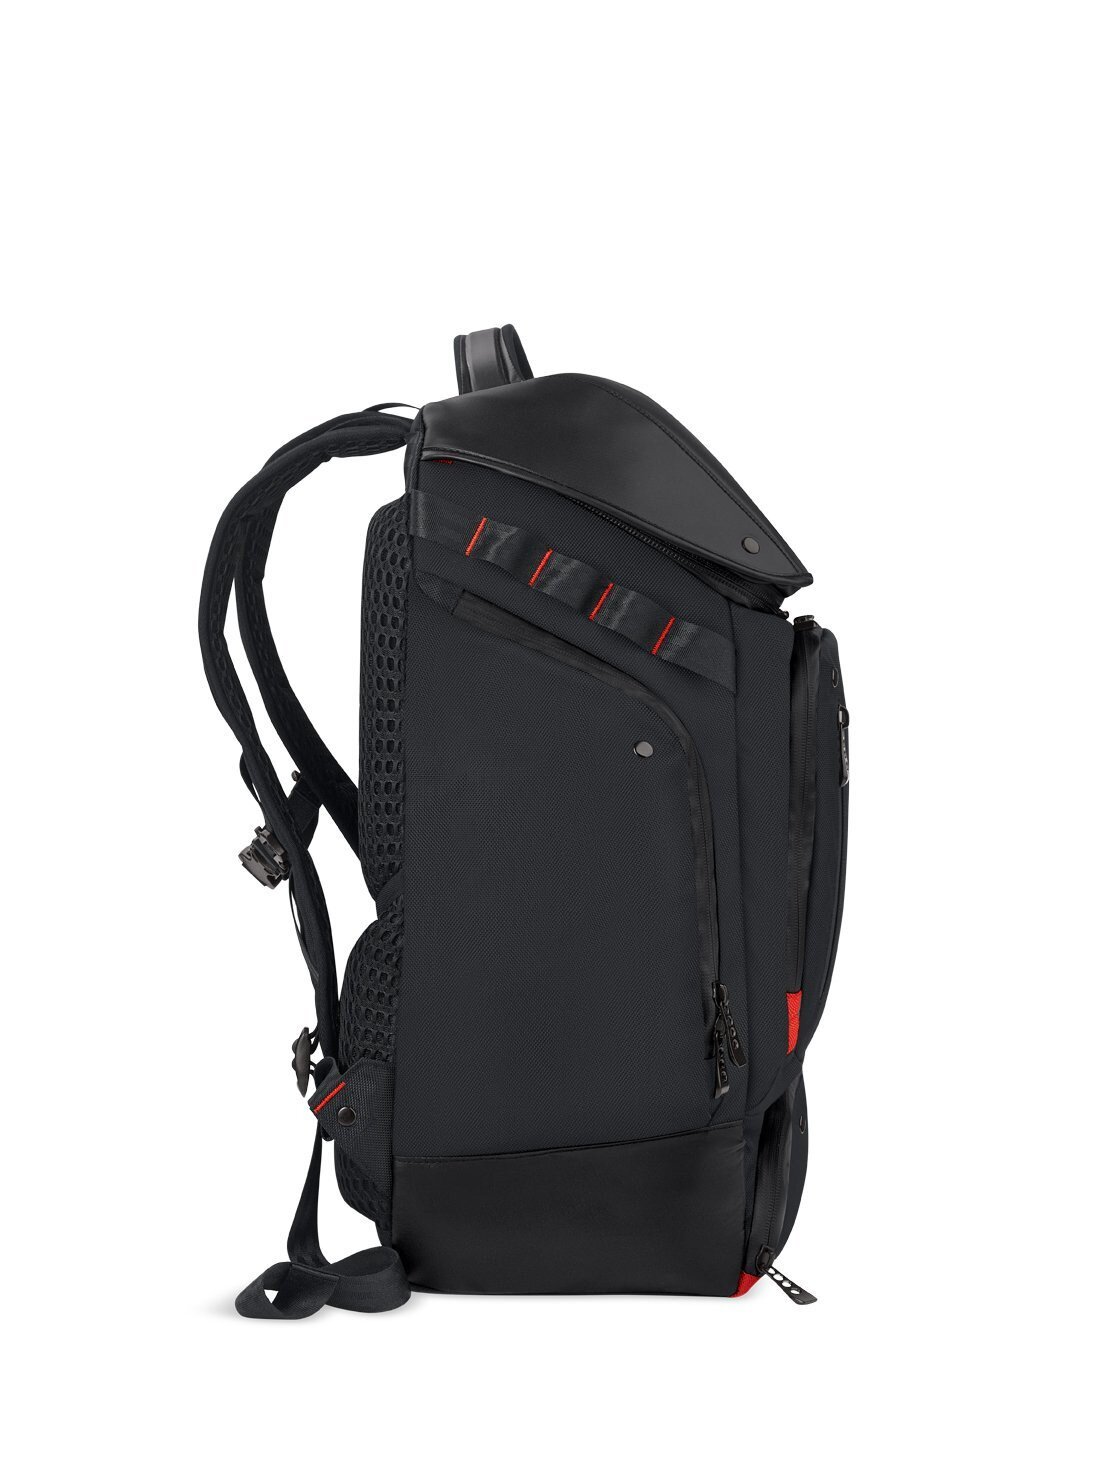 Buy Acer Predator Notebook Gaming Utility Backpack online Worldwide ...